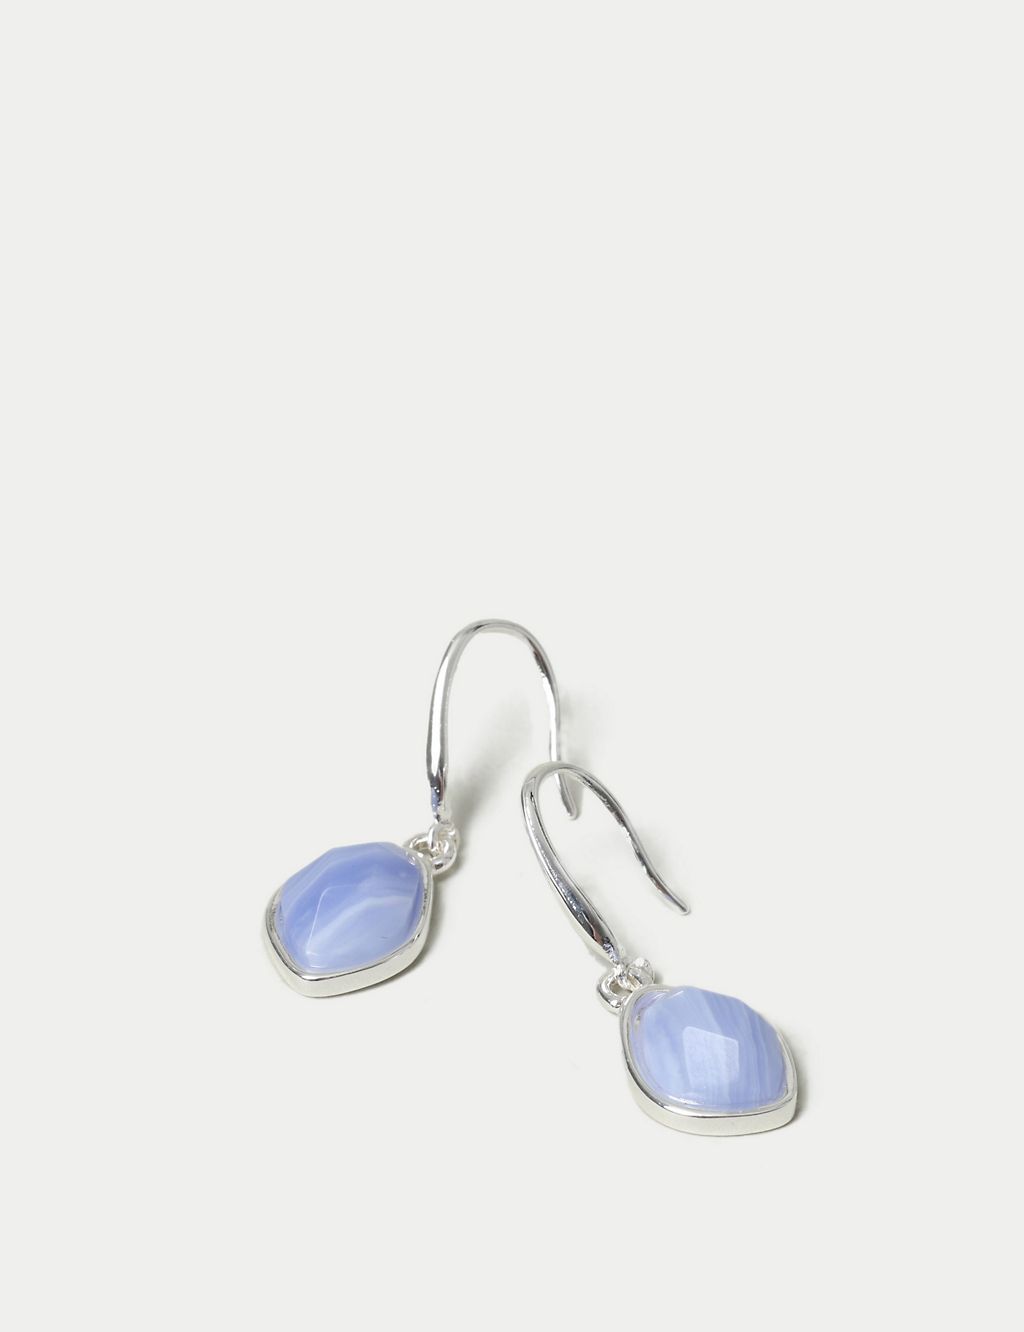 Blue Lace Agate Drop Earrings 2 of 3